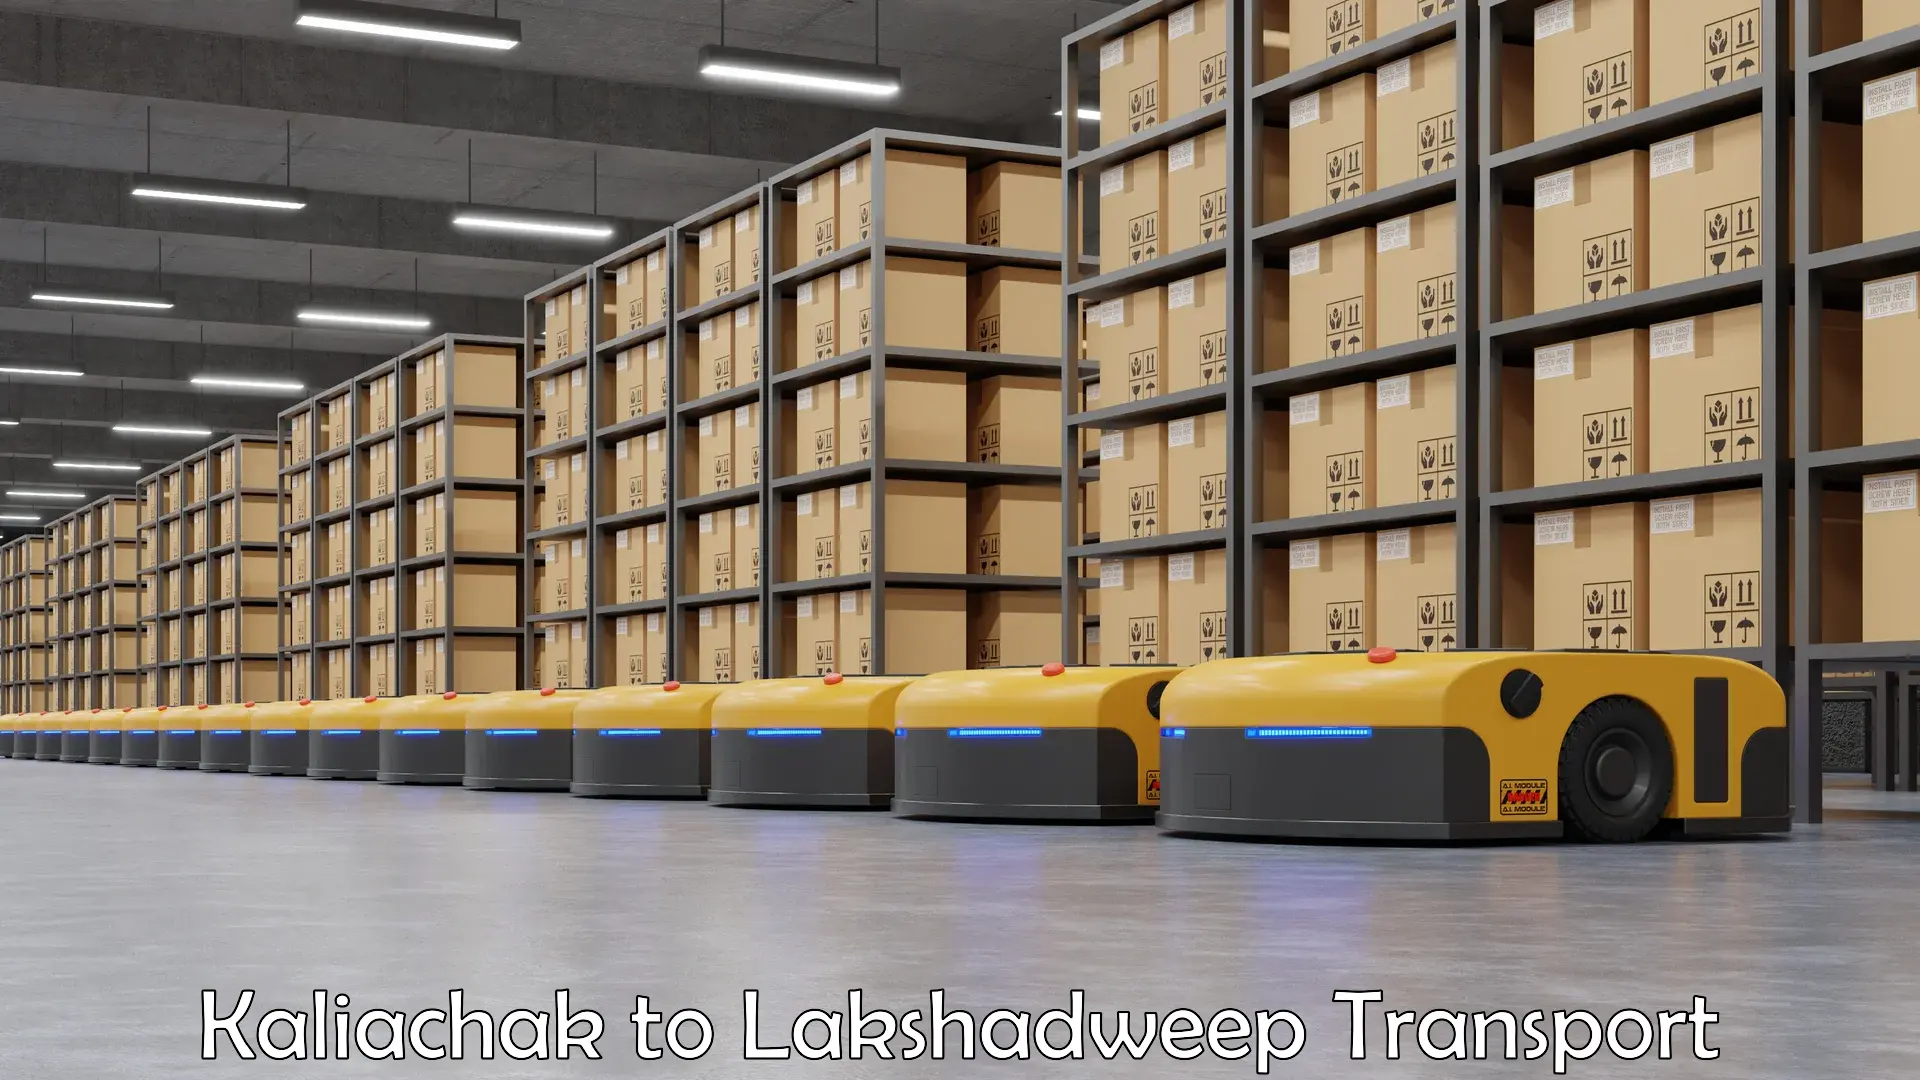 Lorry transport service Kaliachak to Lakshadweep